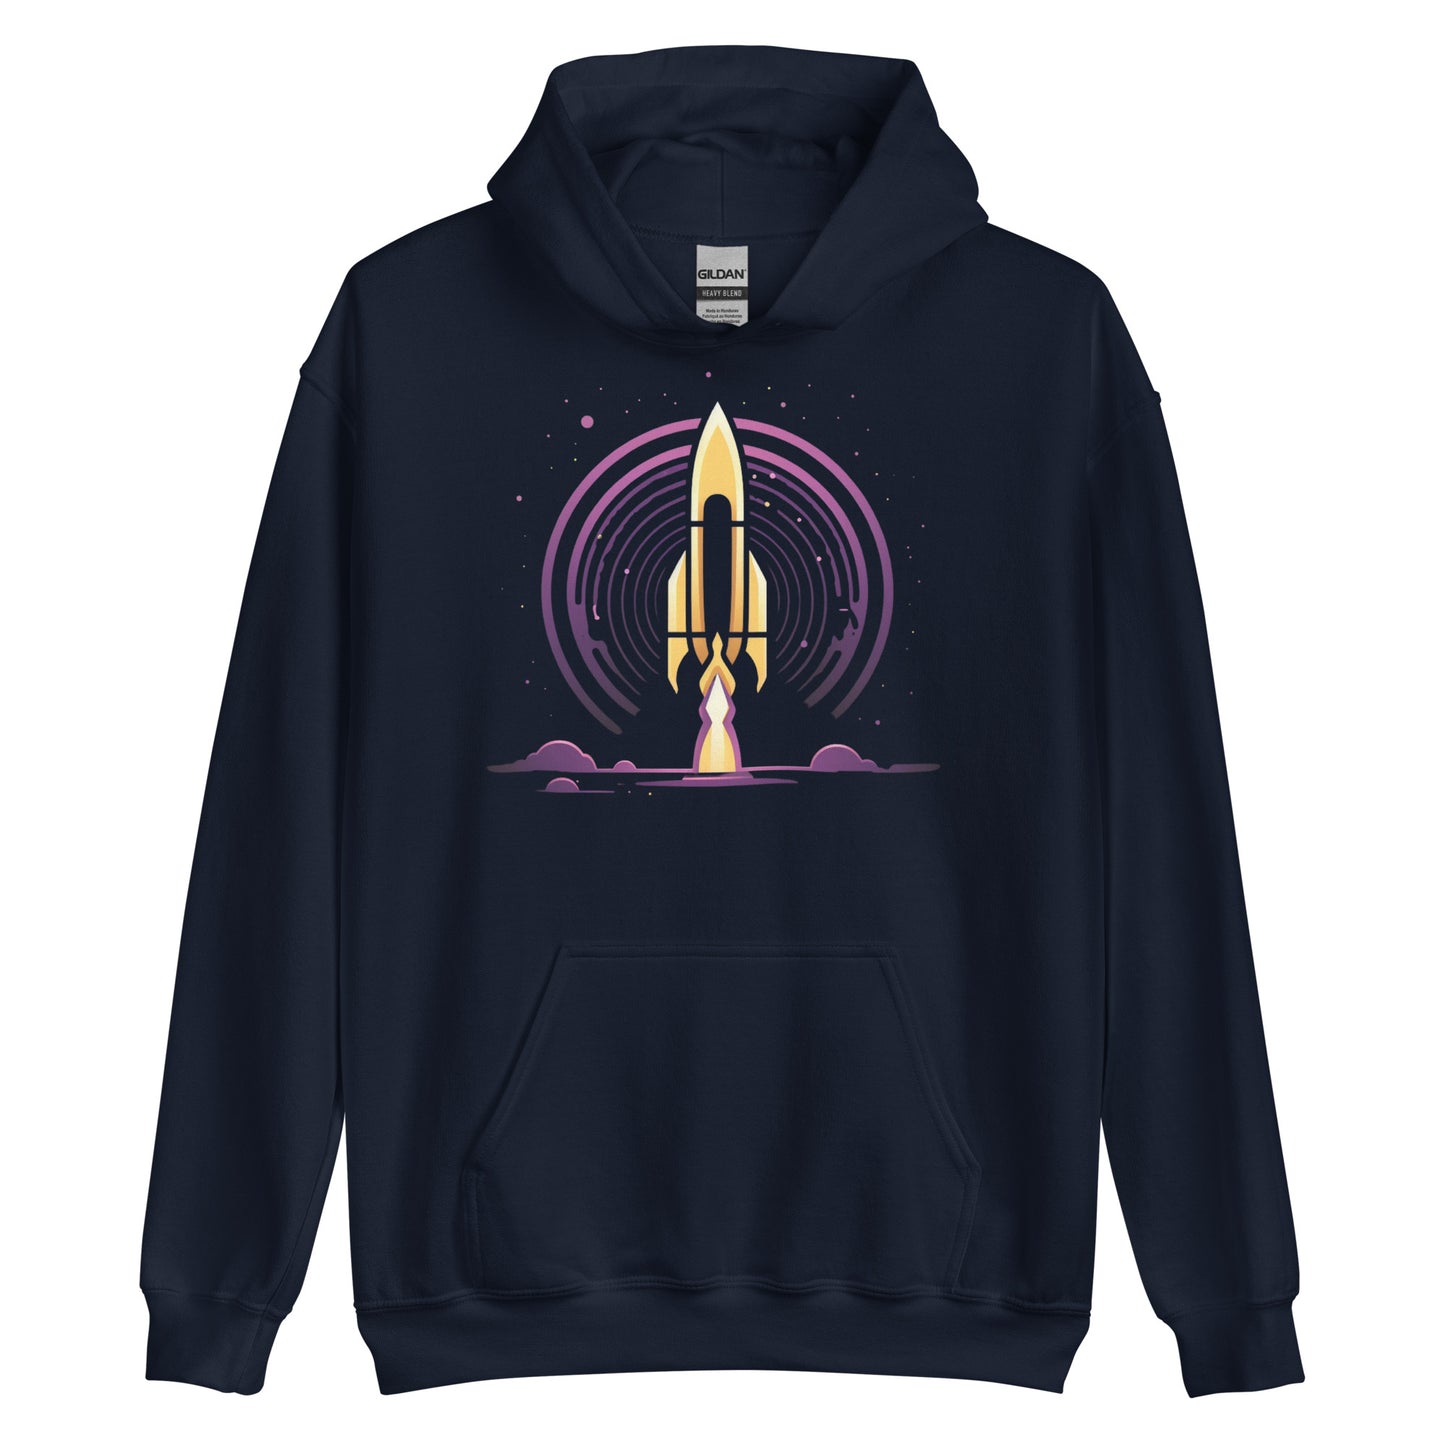 Space Rocket Graphic Hoodie - Space Shuttle Sweatshirt